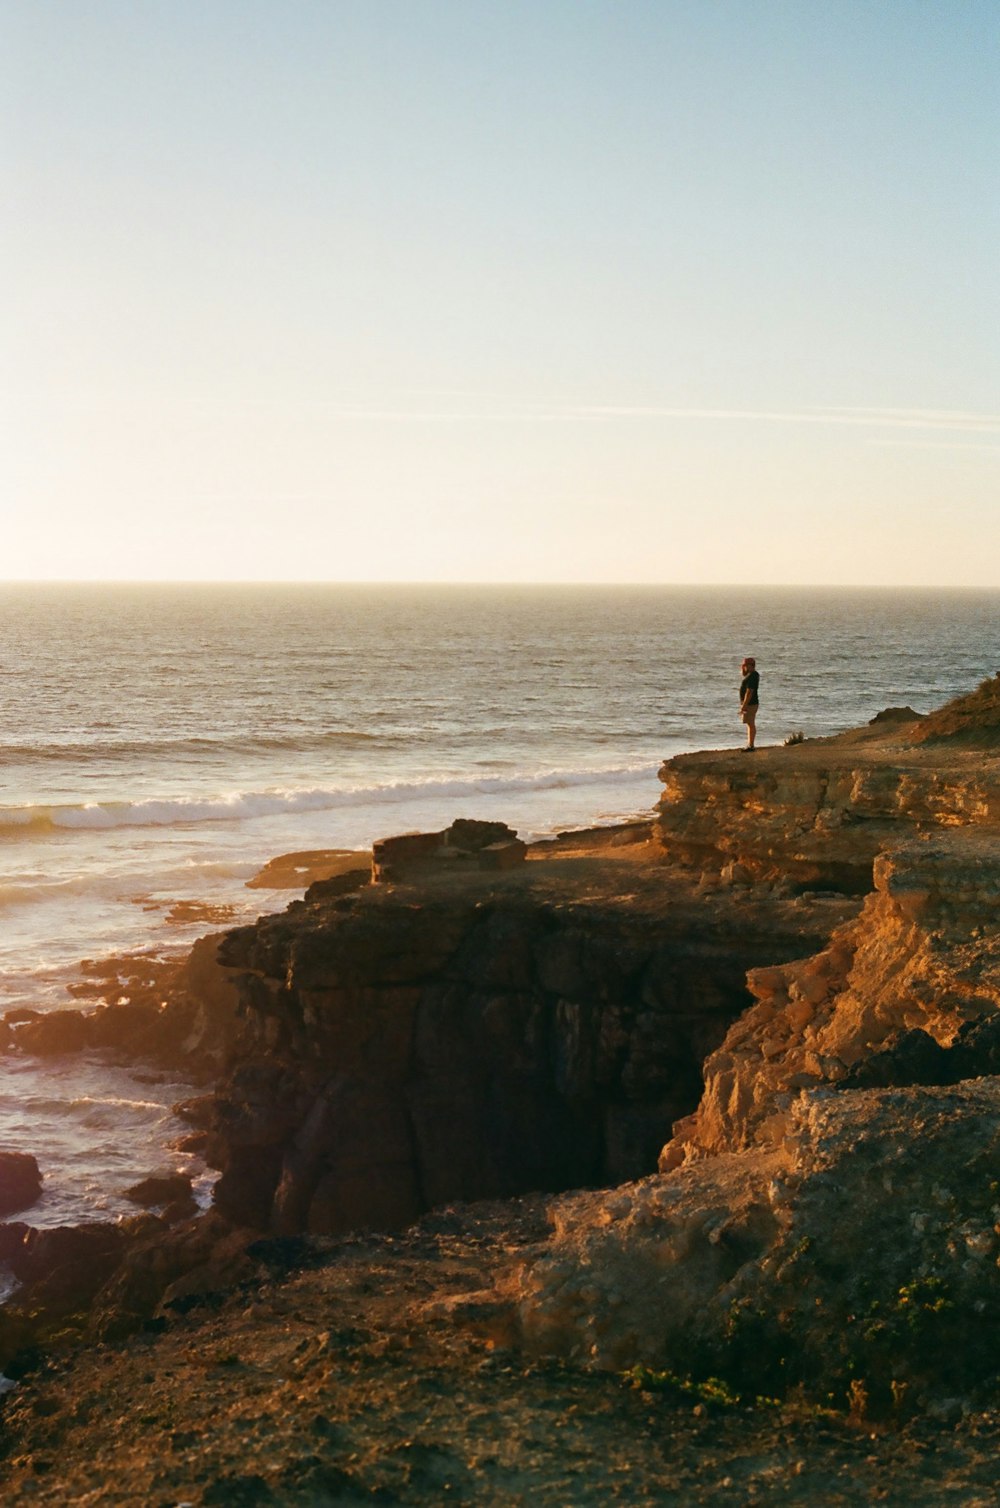 Person, die tagsüber auf einer Felsformation in der Nähe des Meeres steht